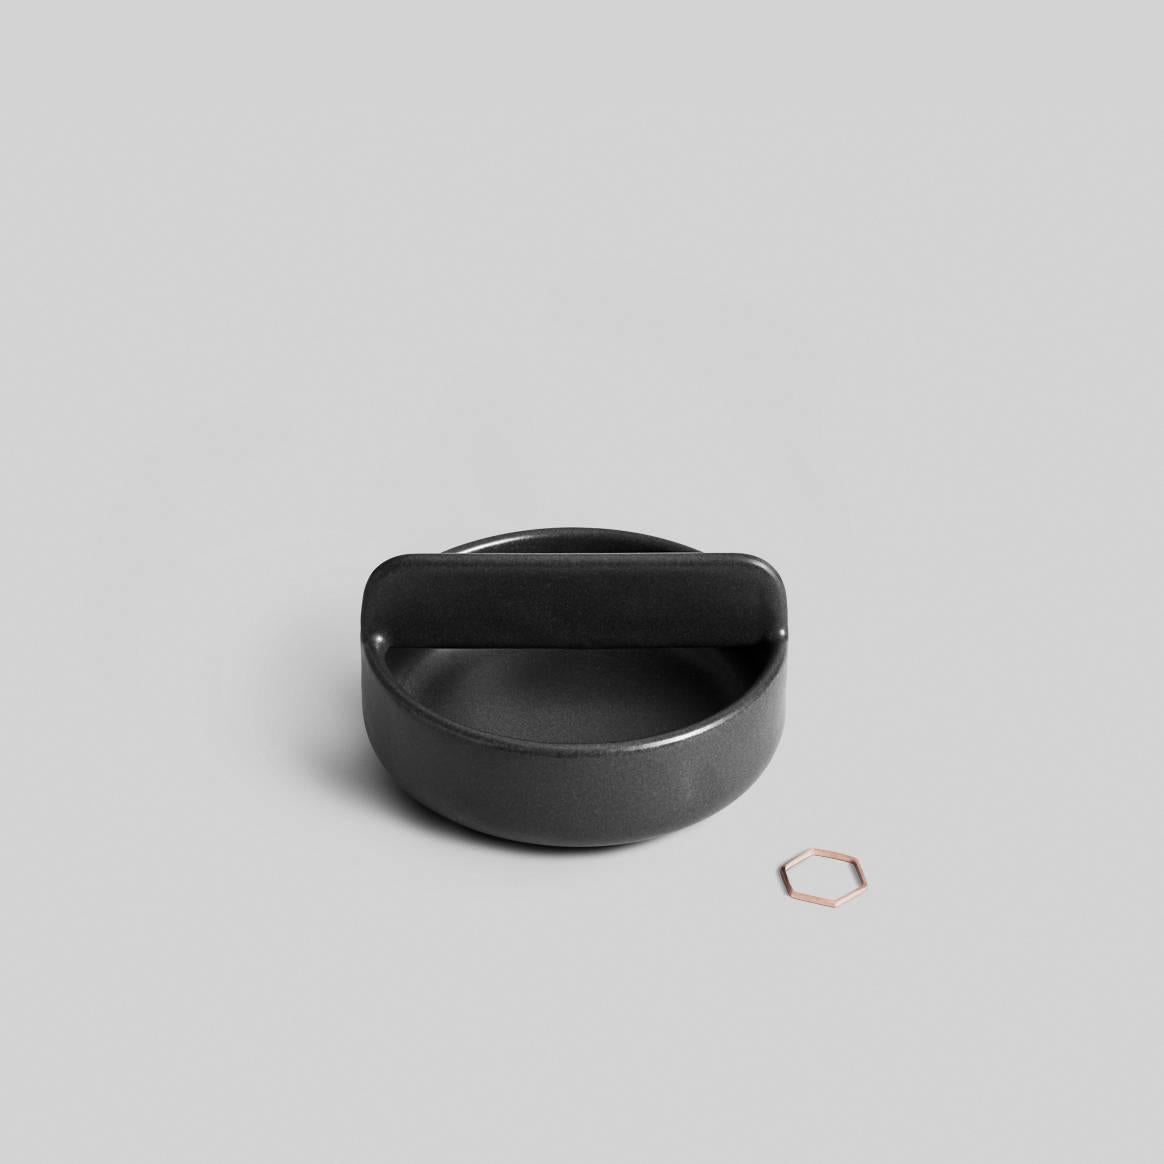 Other Trestle Bowl / Vessel Set in Contemporary 3D Printed Matte Black Porcelain For Sale